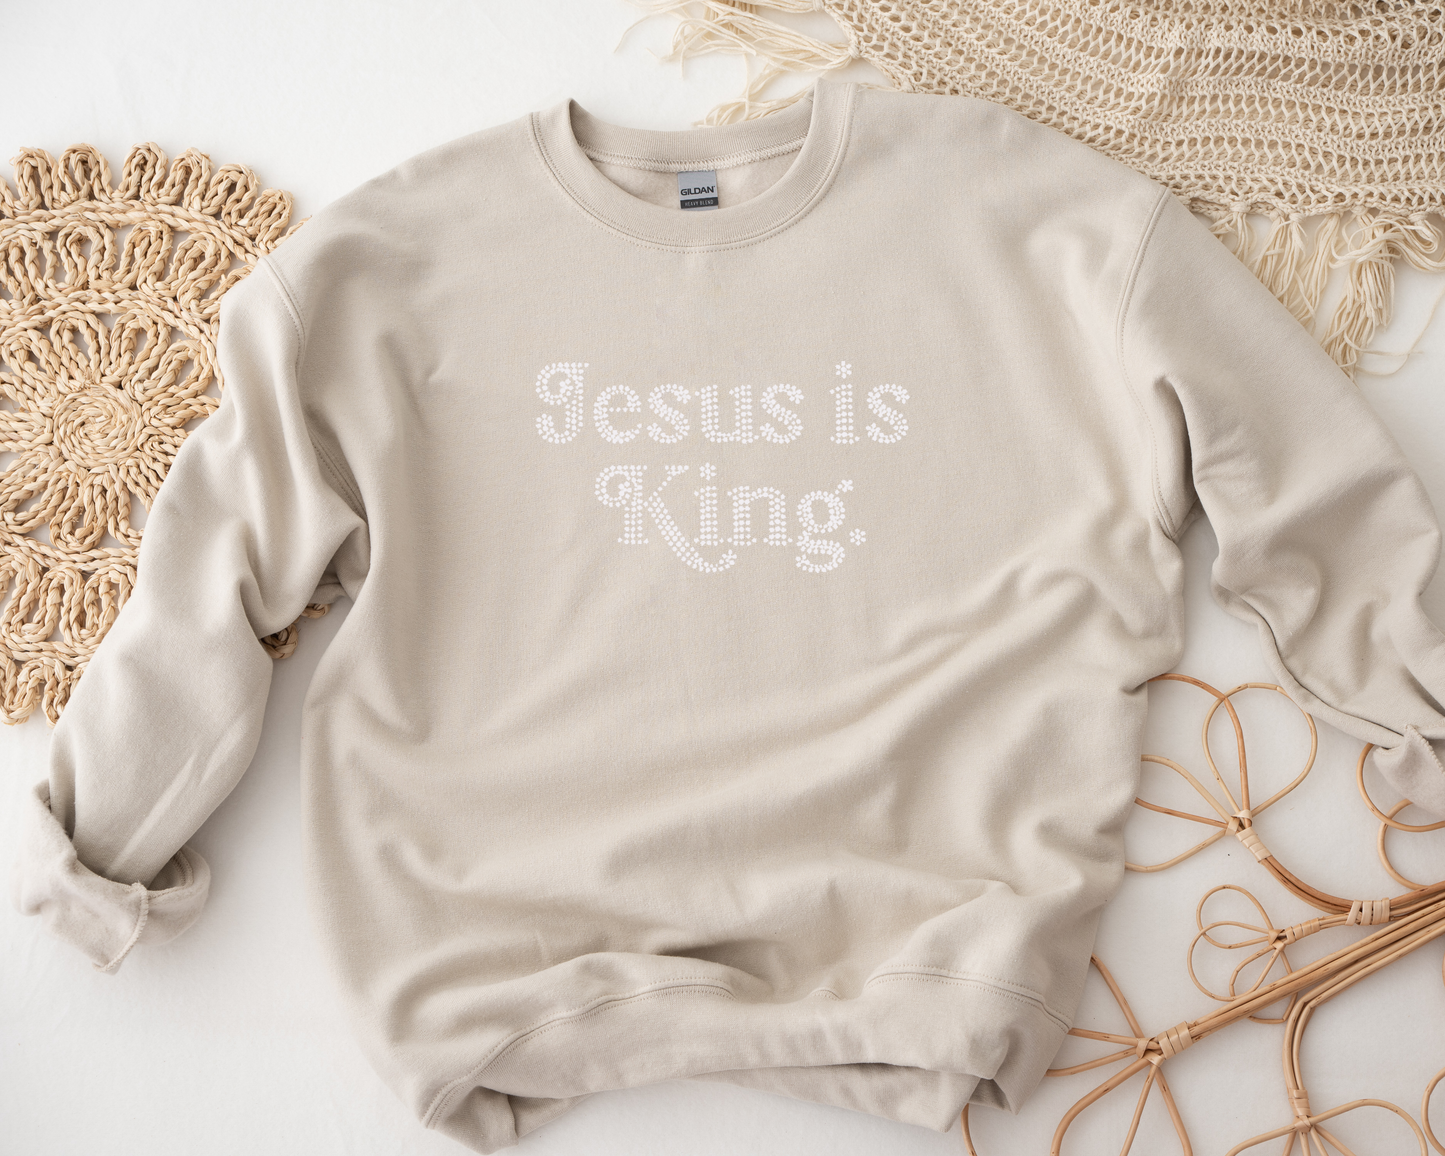 Jesus is King Rhinestone hoodies/sweatshirts